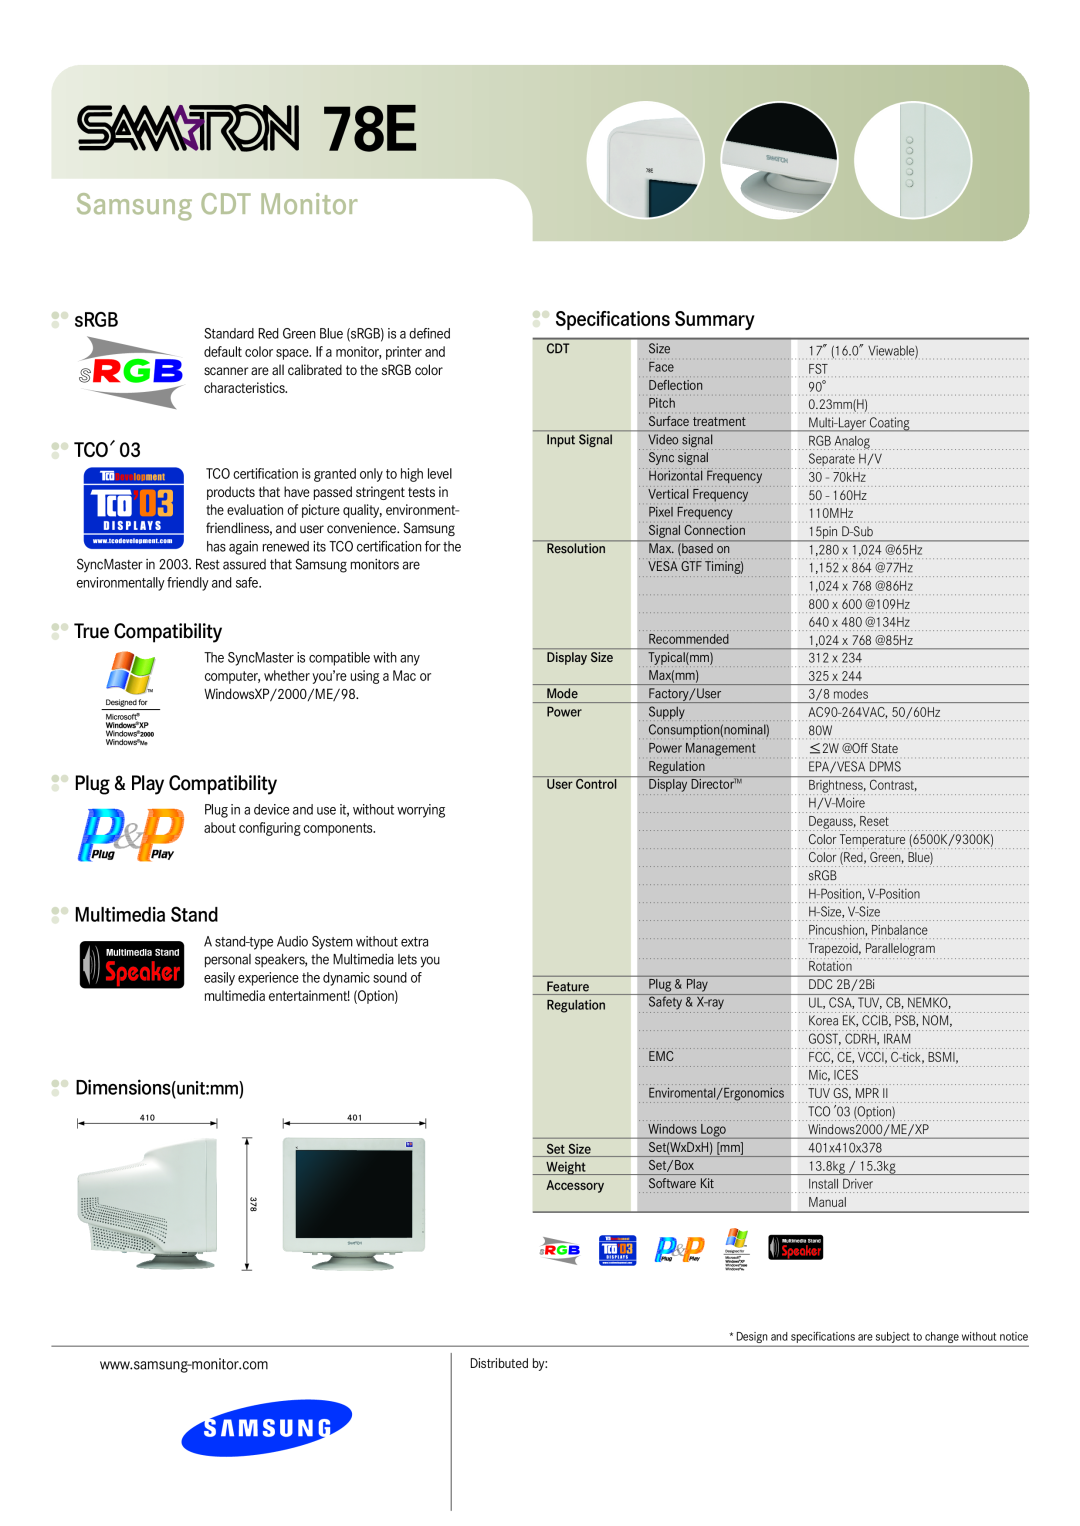 Samsung 78E Samsung CDT Monitor, sRGB, True Compatibility, Plug & Play Compatibility, Multimedia Stand, Dimensionsunitmm 